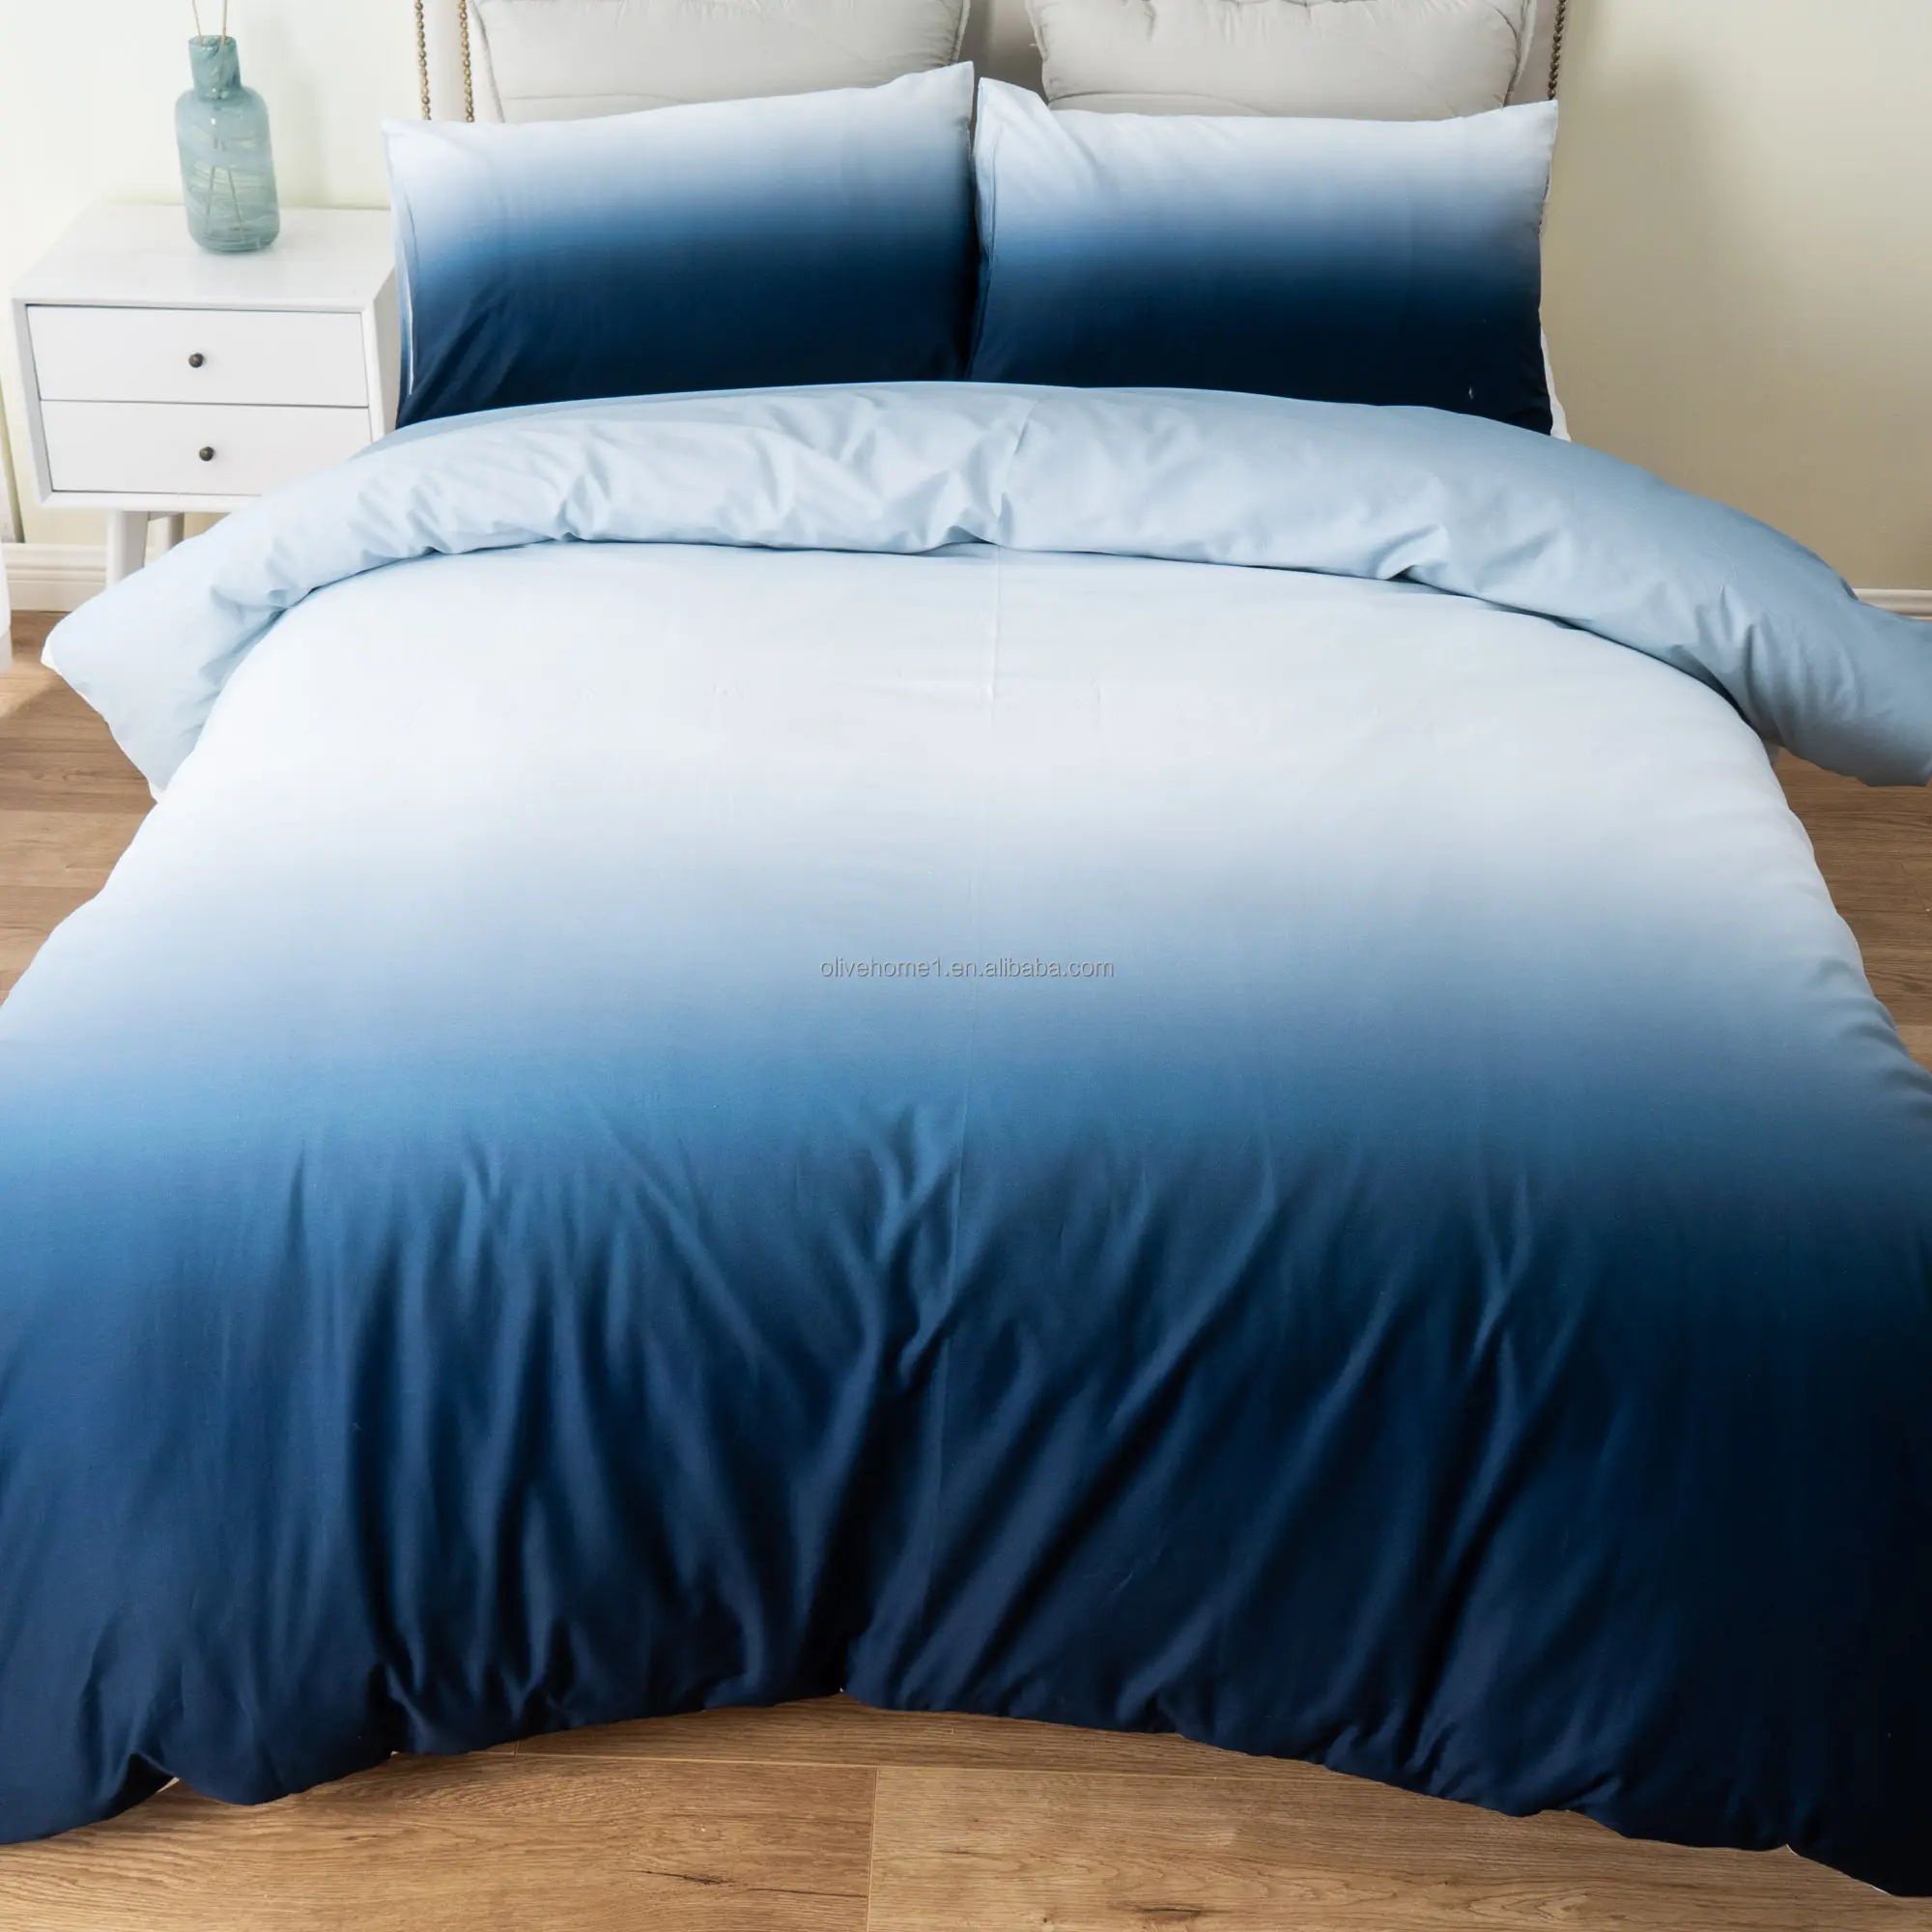 Colcha de edredom 100% algodão para quarto com gradiente azul branco, colcha e colcha, conjunto de cama com fronha, 2 peças